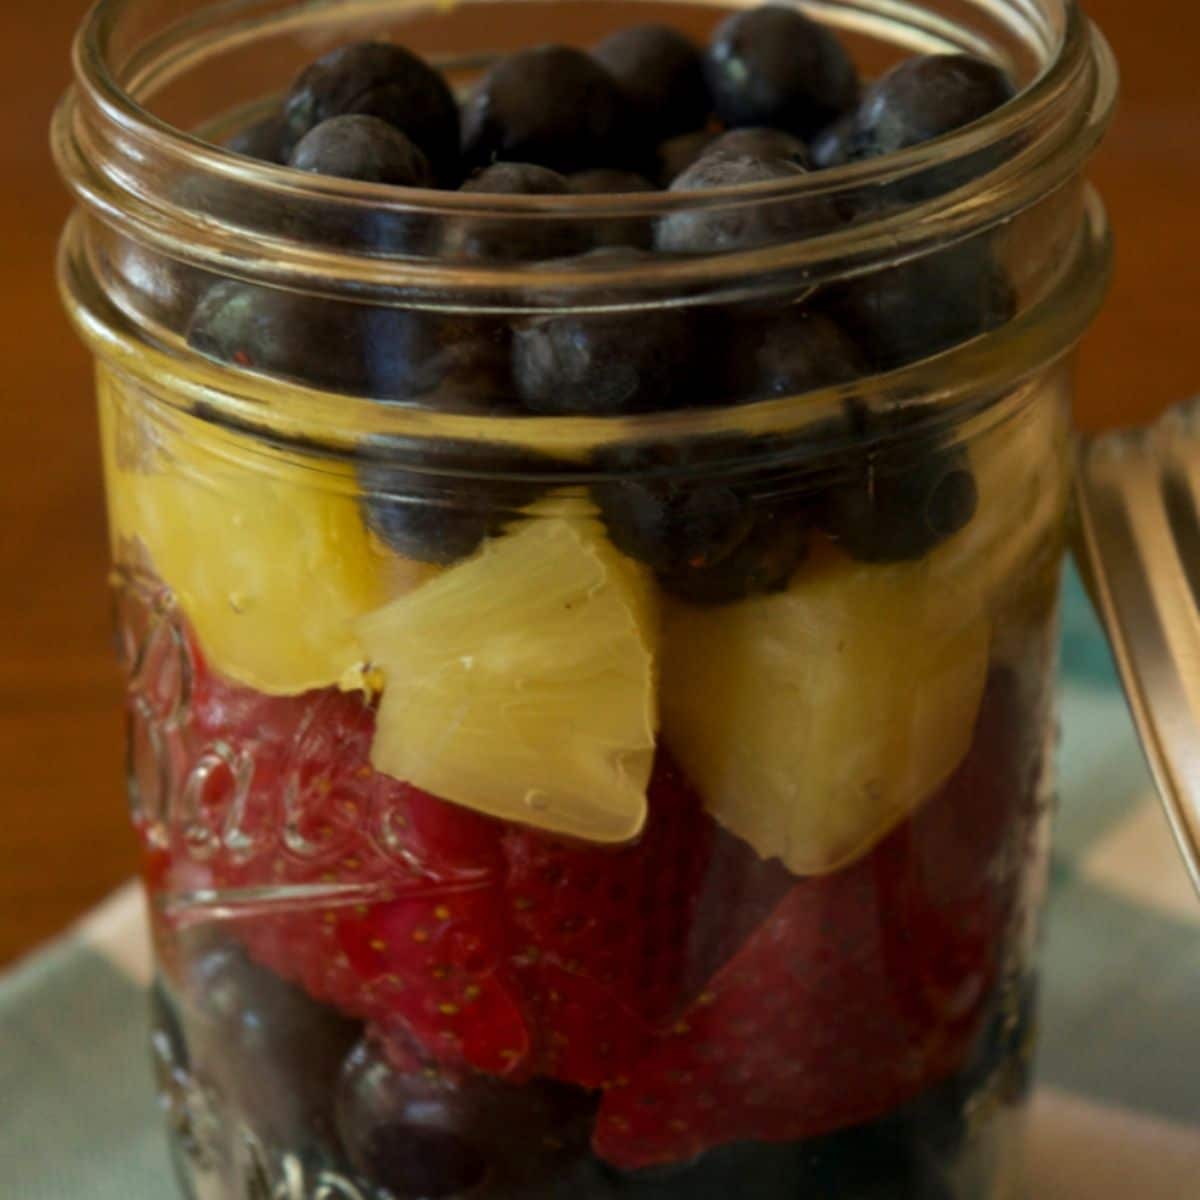 Fruit Salad in a Mason Jar - Mason Jar Crafts Love